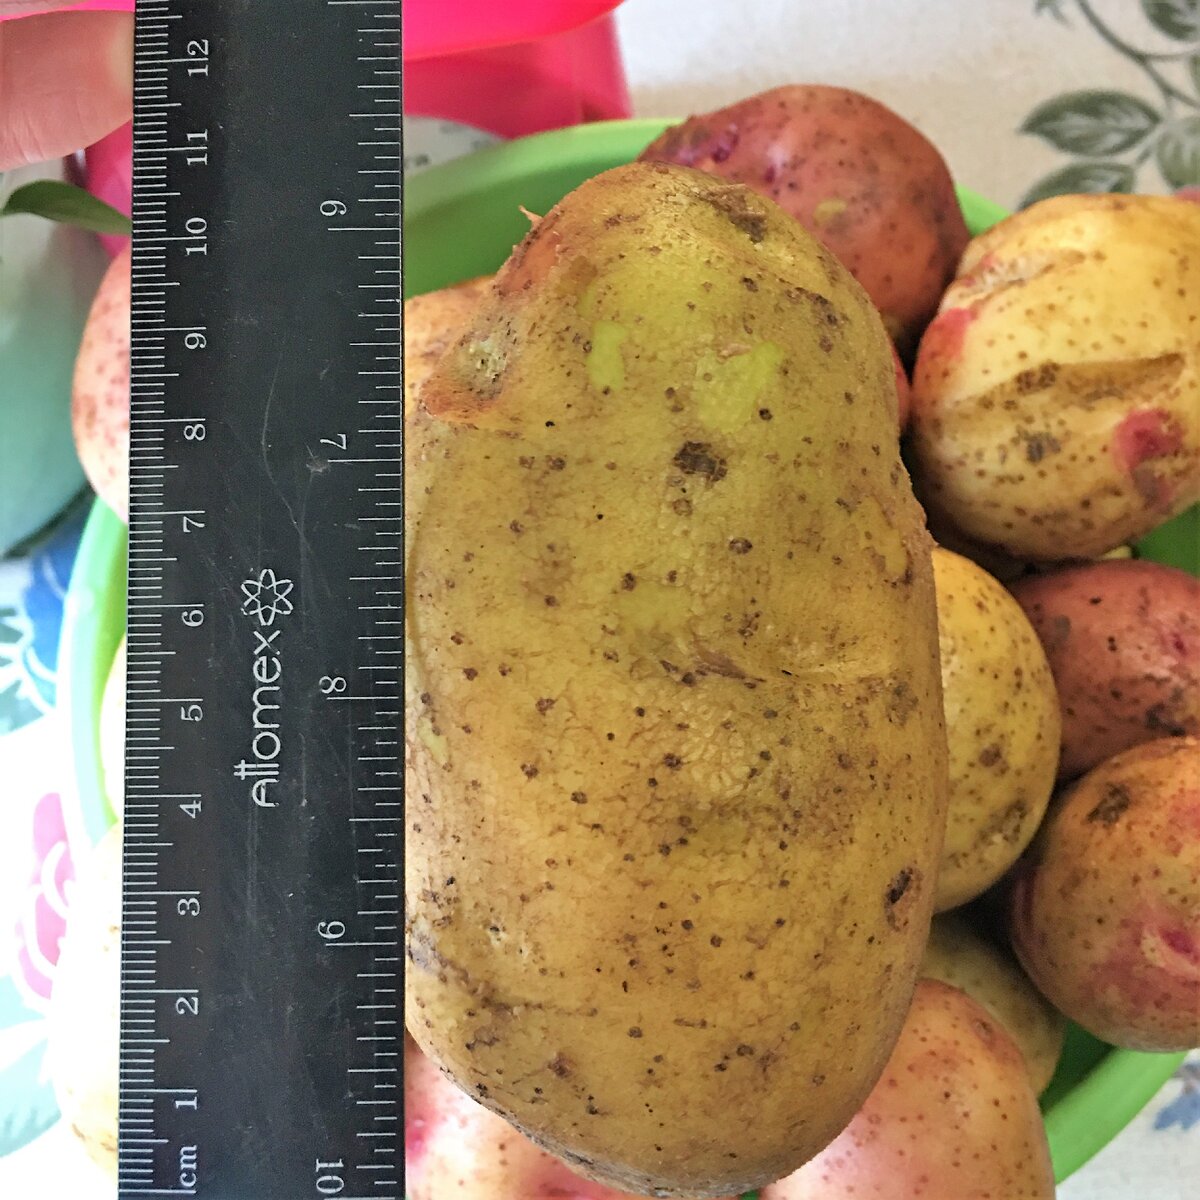 выберите фотографию где изображены плоды картофеля